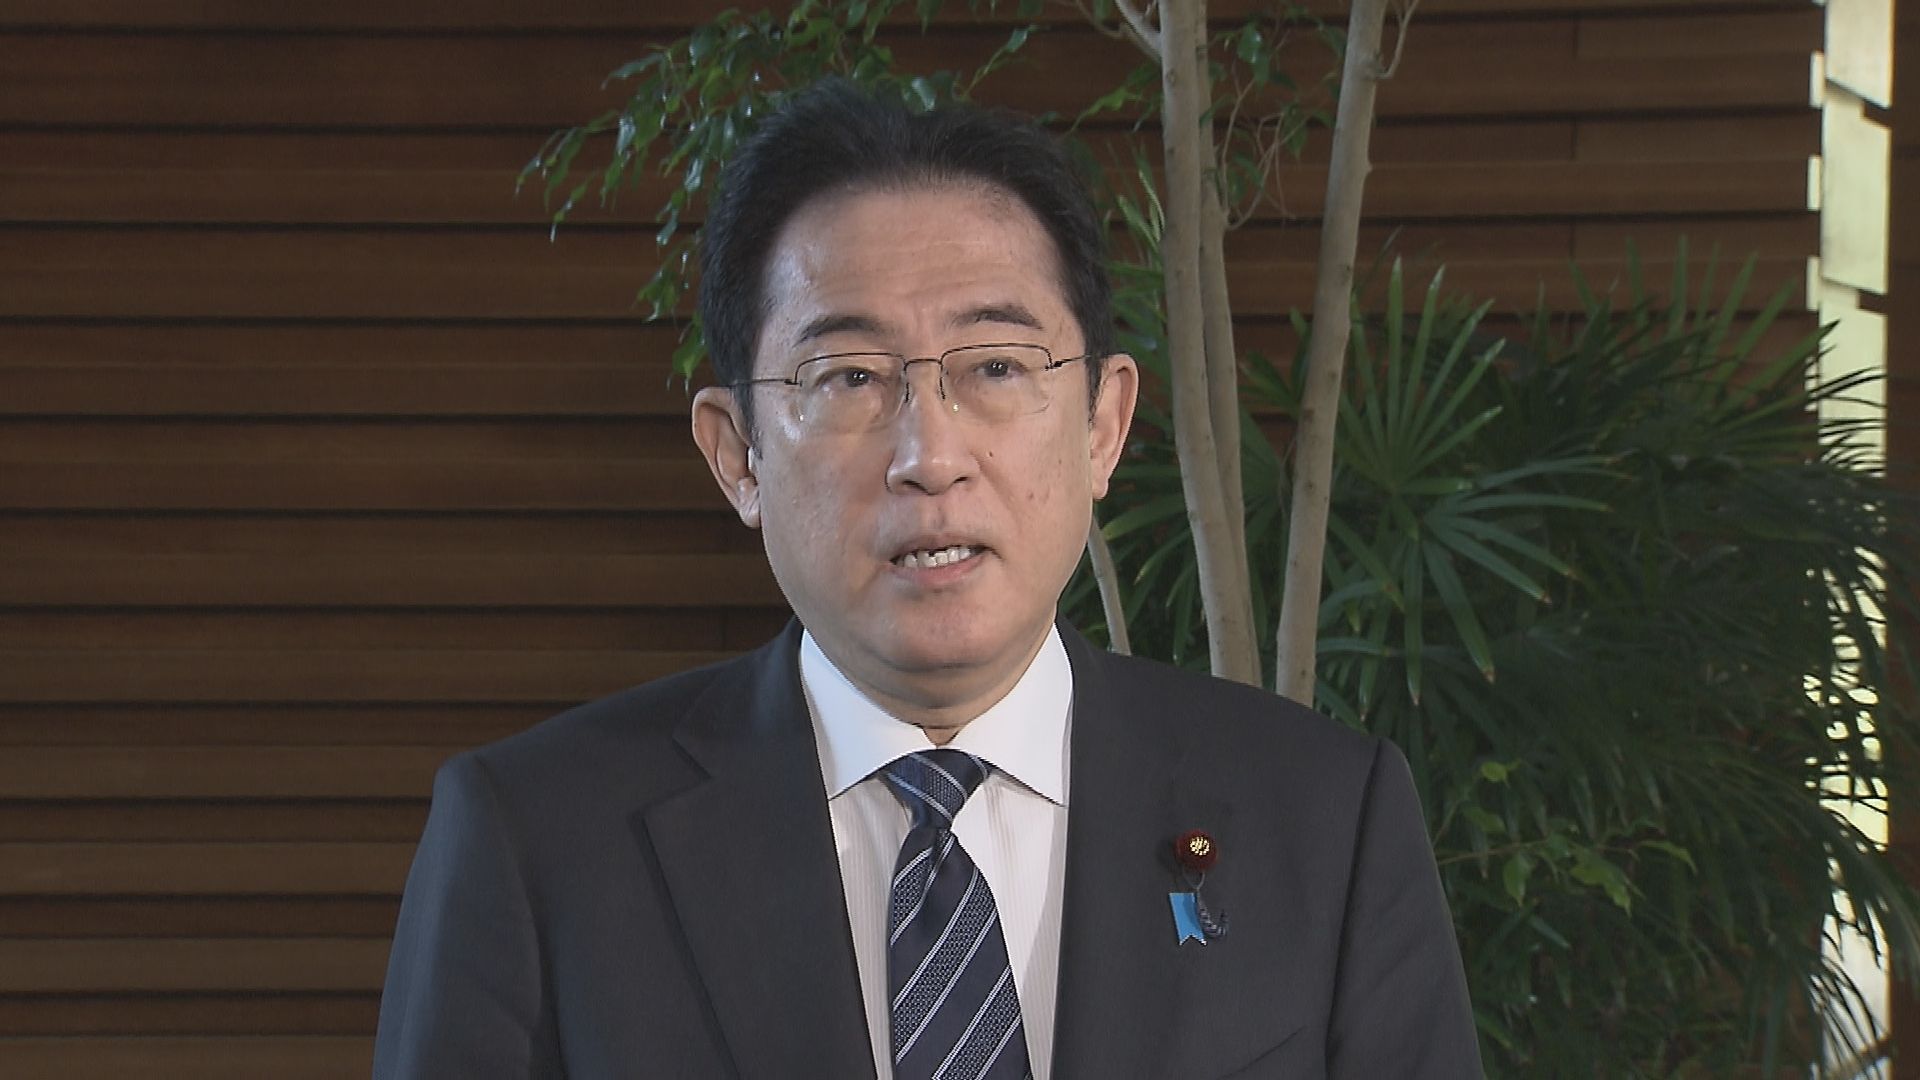 【速報】岸田総理、統一地方選の維新伸長に「引き続き気を引き締めて対応」